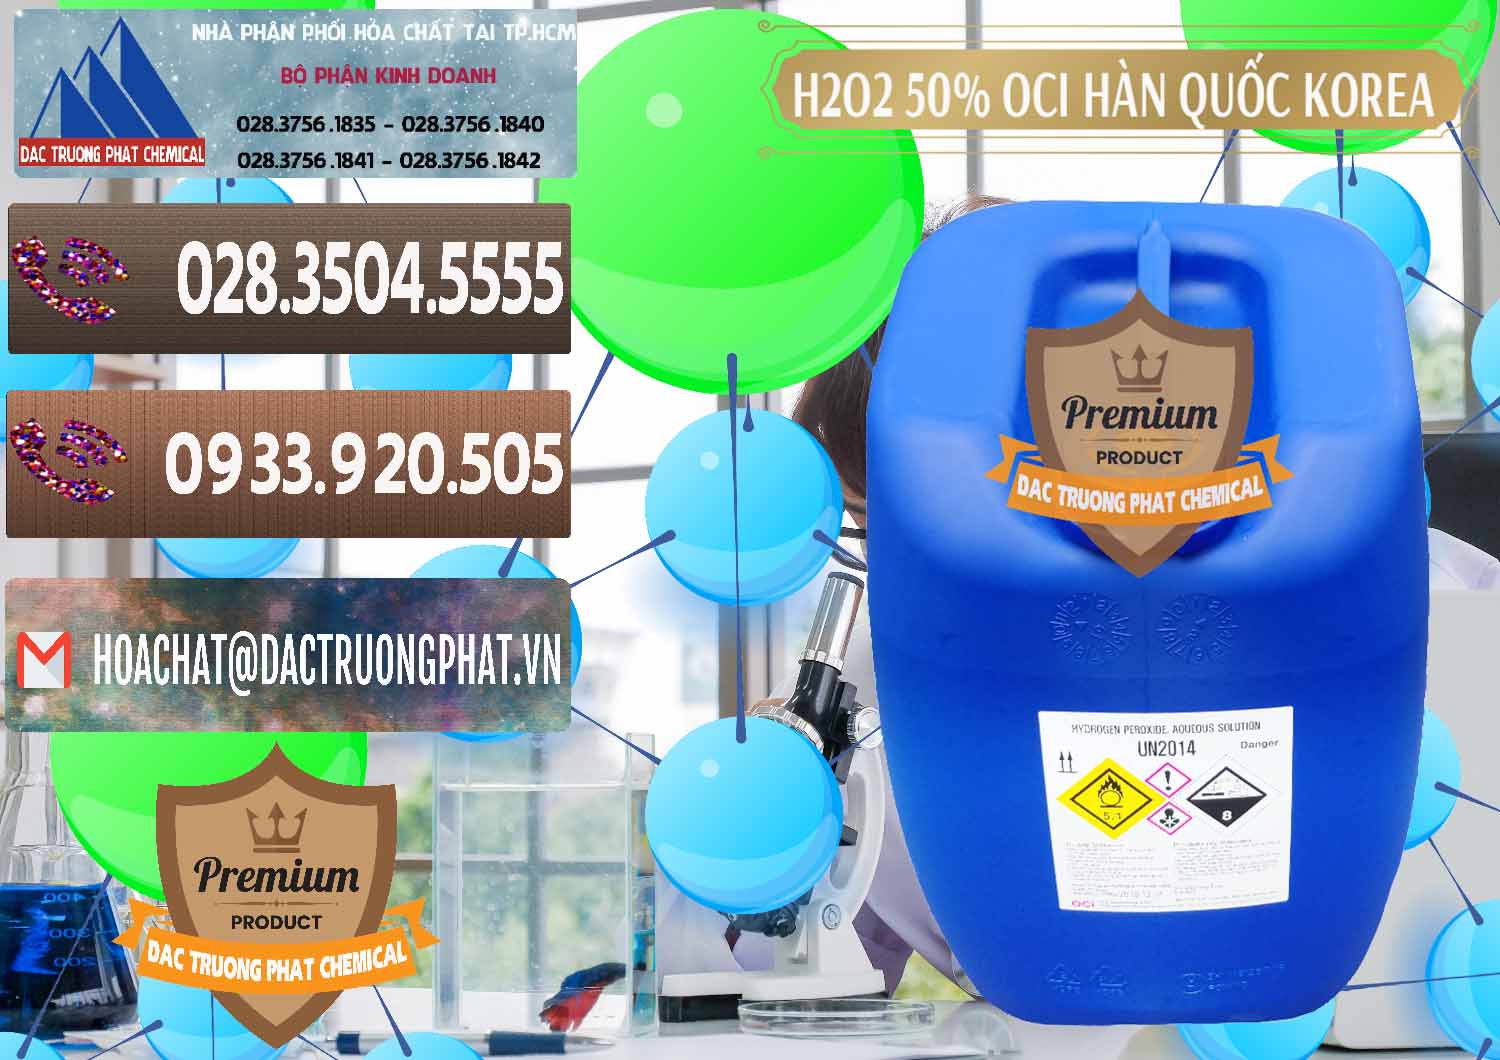 Cty chuyên bán ( cung cấp ) H2O2 - Hydrogen Peroxide 50% OCI Hàn Quốc Korea - 0075 - Đơn vị nhập khẩu _ phân phối hóa chất tại TP.HCM - hoachatviet.net